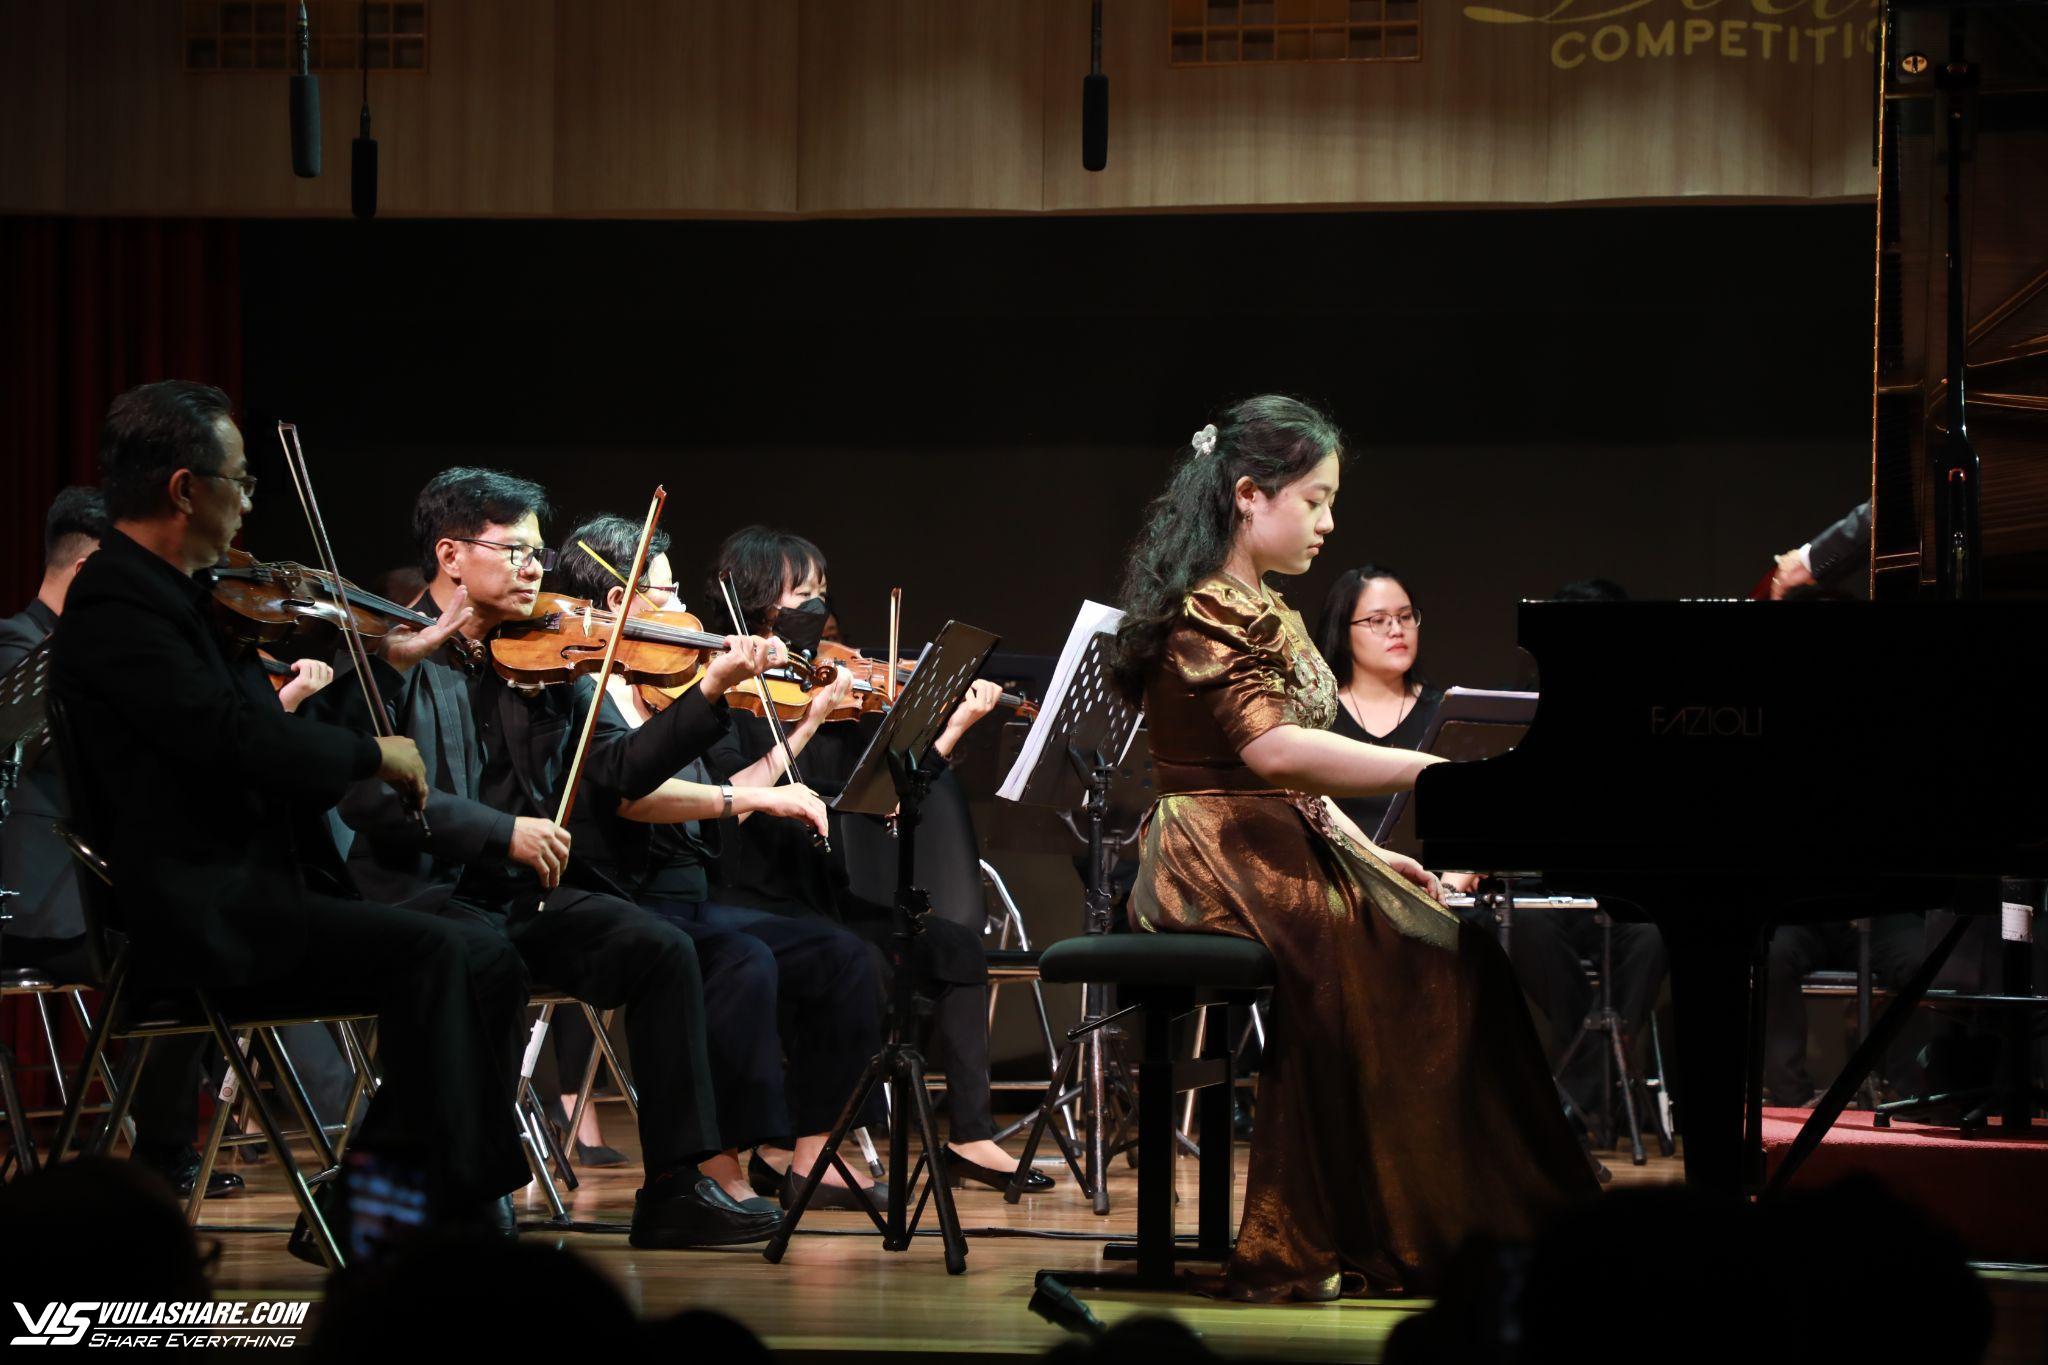 SIU Piano Competition - ‘Điểm hẹn’ tài năng âm nhạc quốc tế- Ảnh 1.